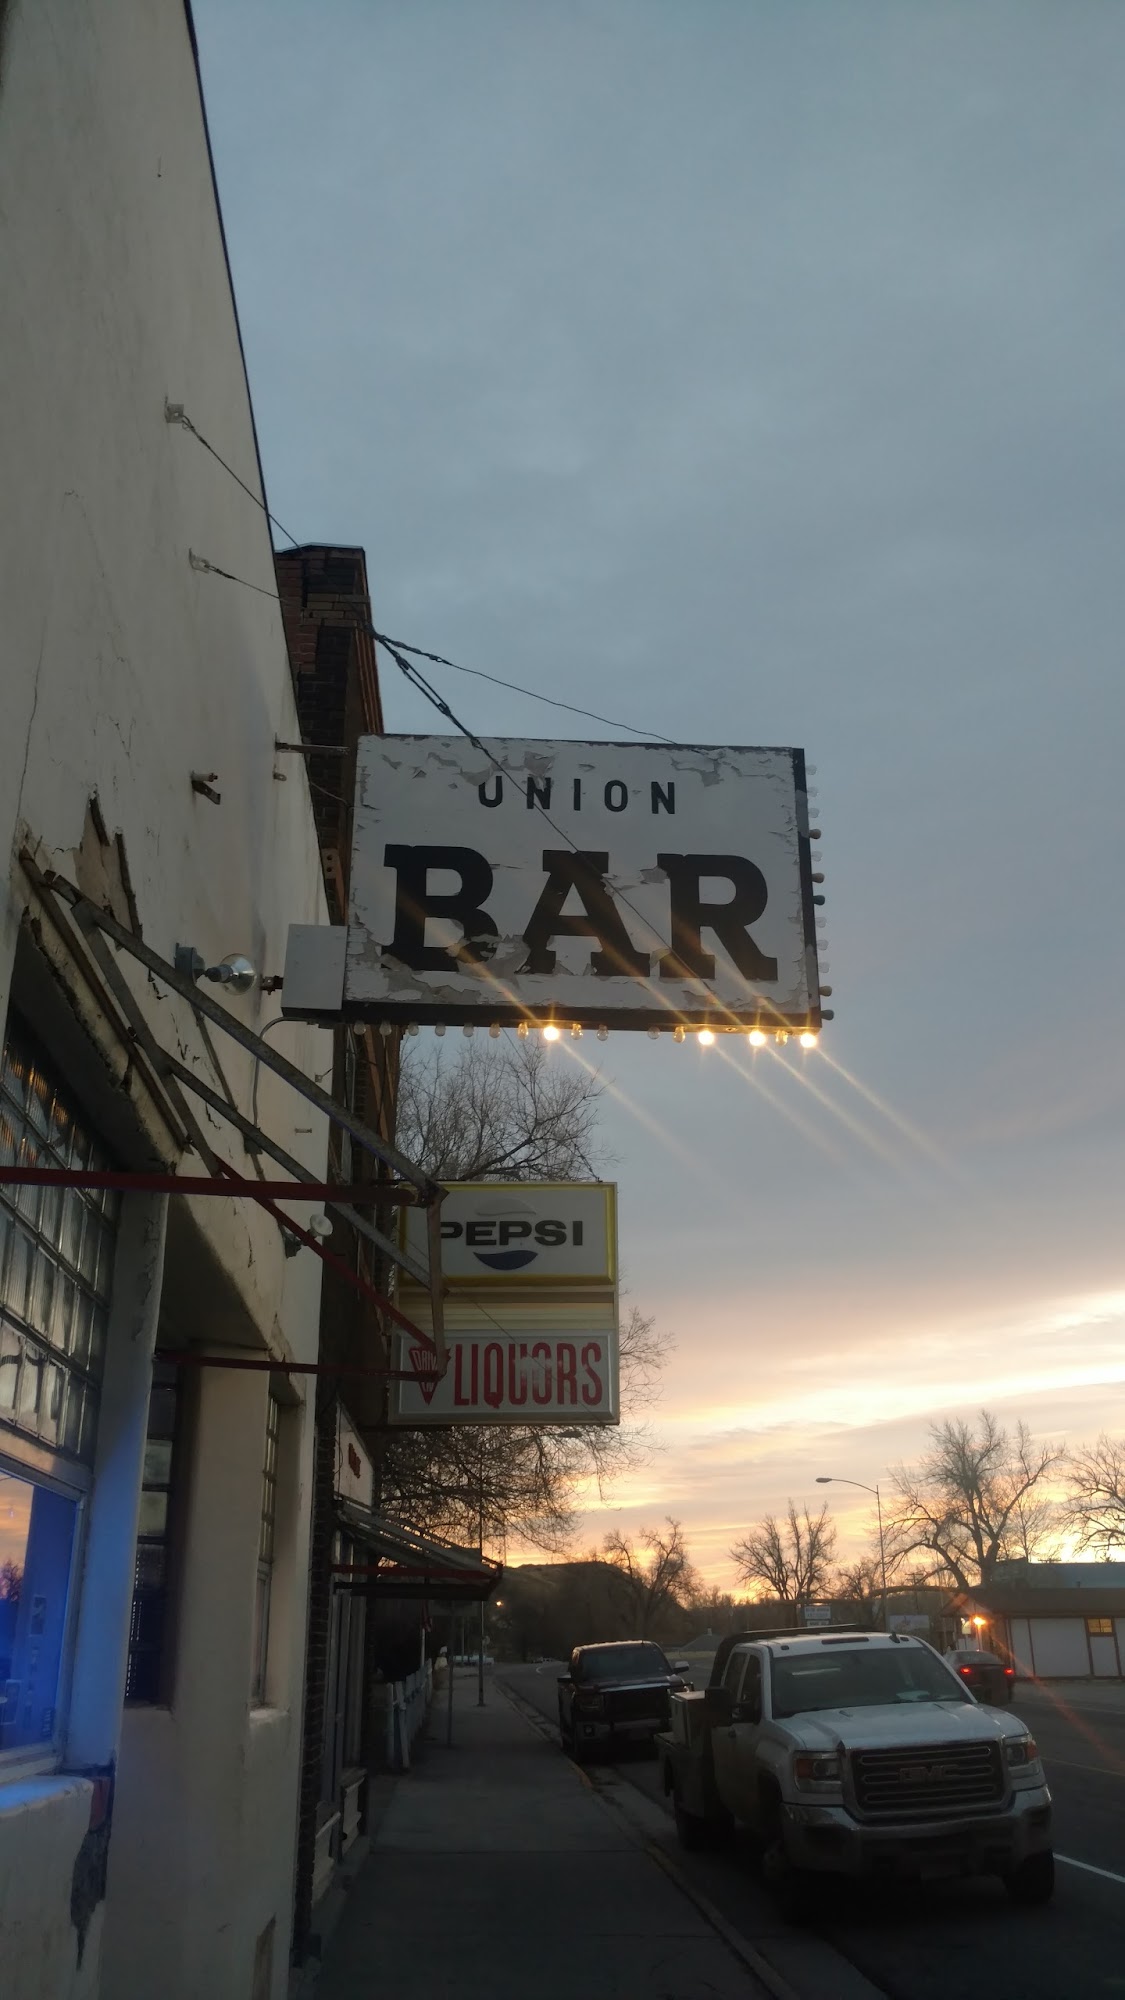 Union Bar & Grill